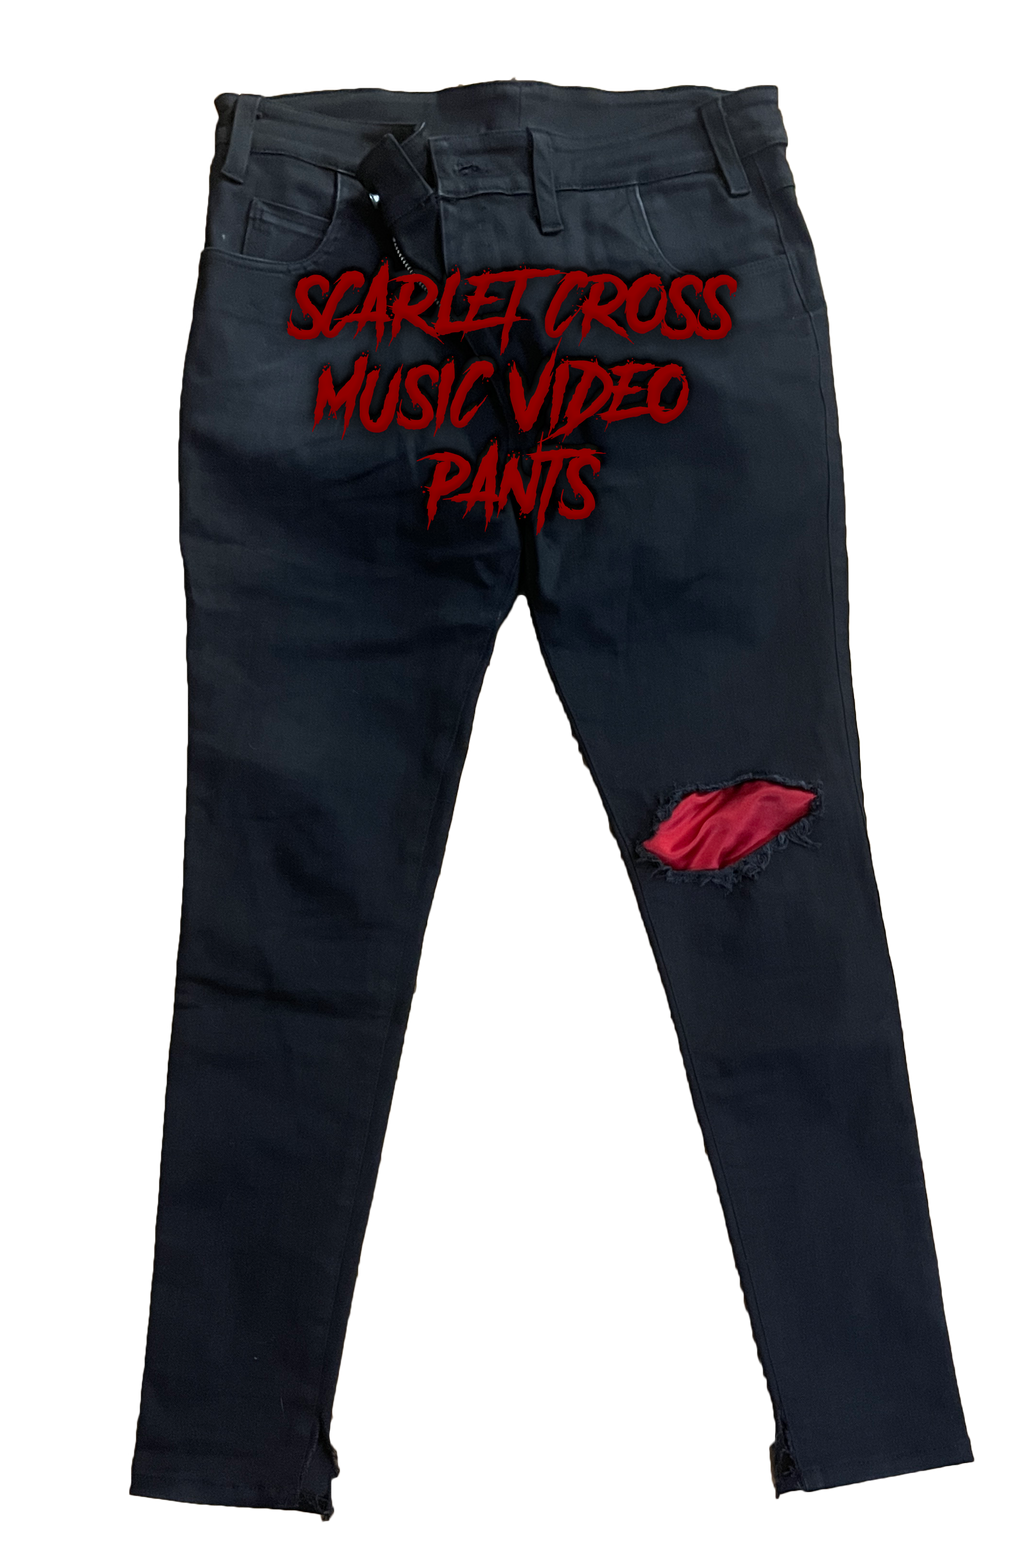 Scarlet Cross Music Video Pants